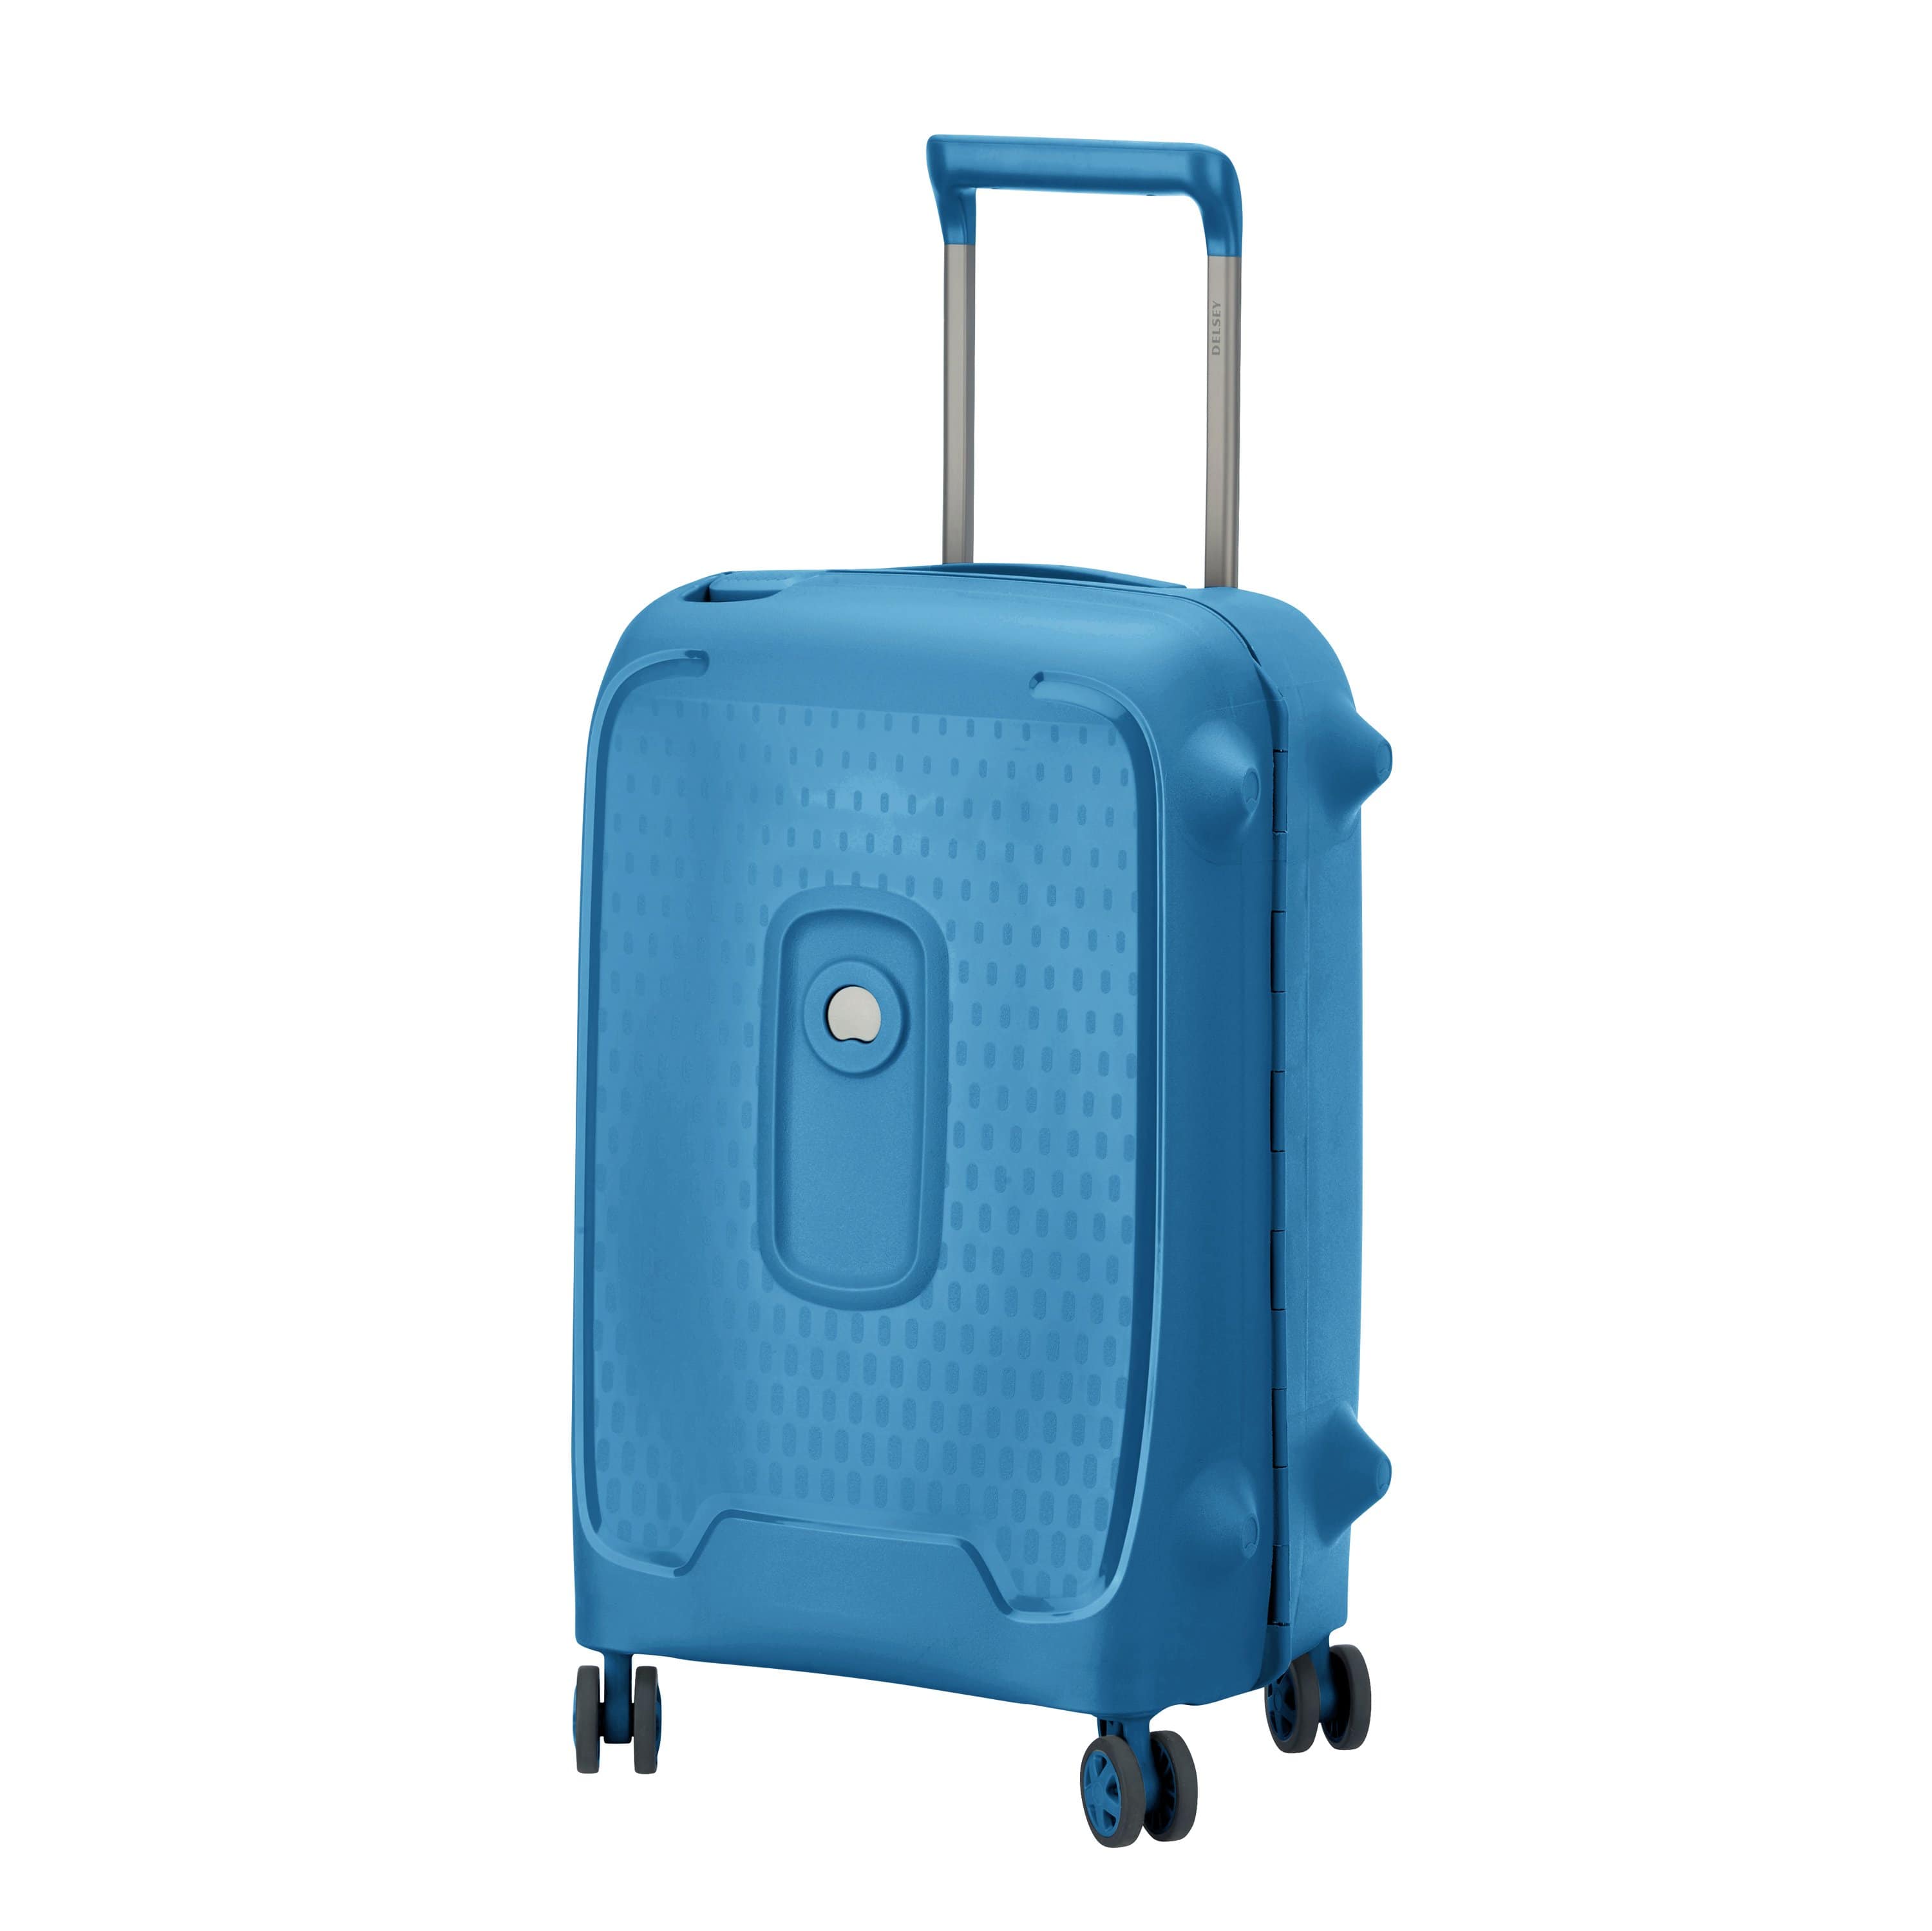 ديلسي مونسي – عربة حقائب سفر سوفت كيس 4 عجلات مزدوجة 55 سم – أزرق فاتح – 00384480112